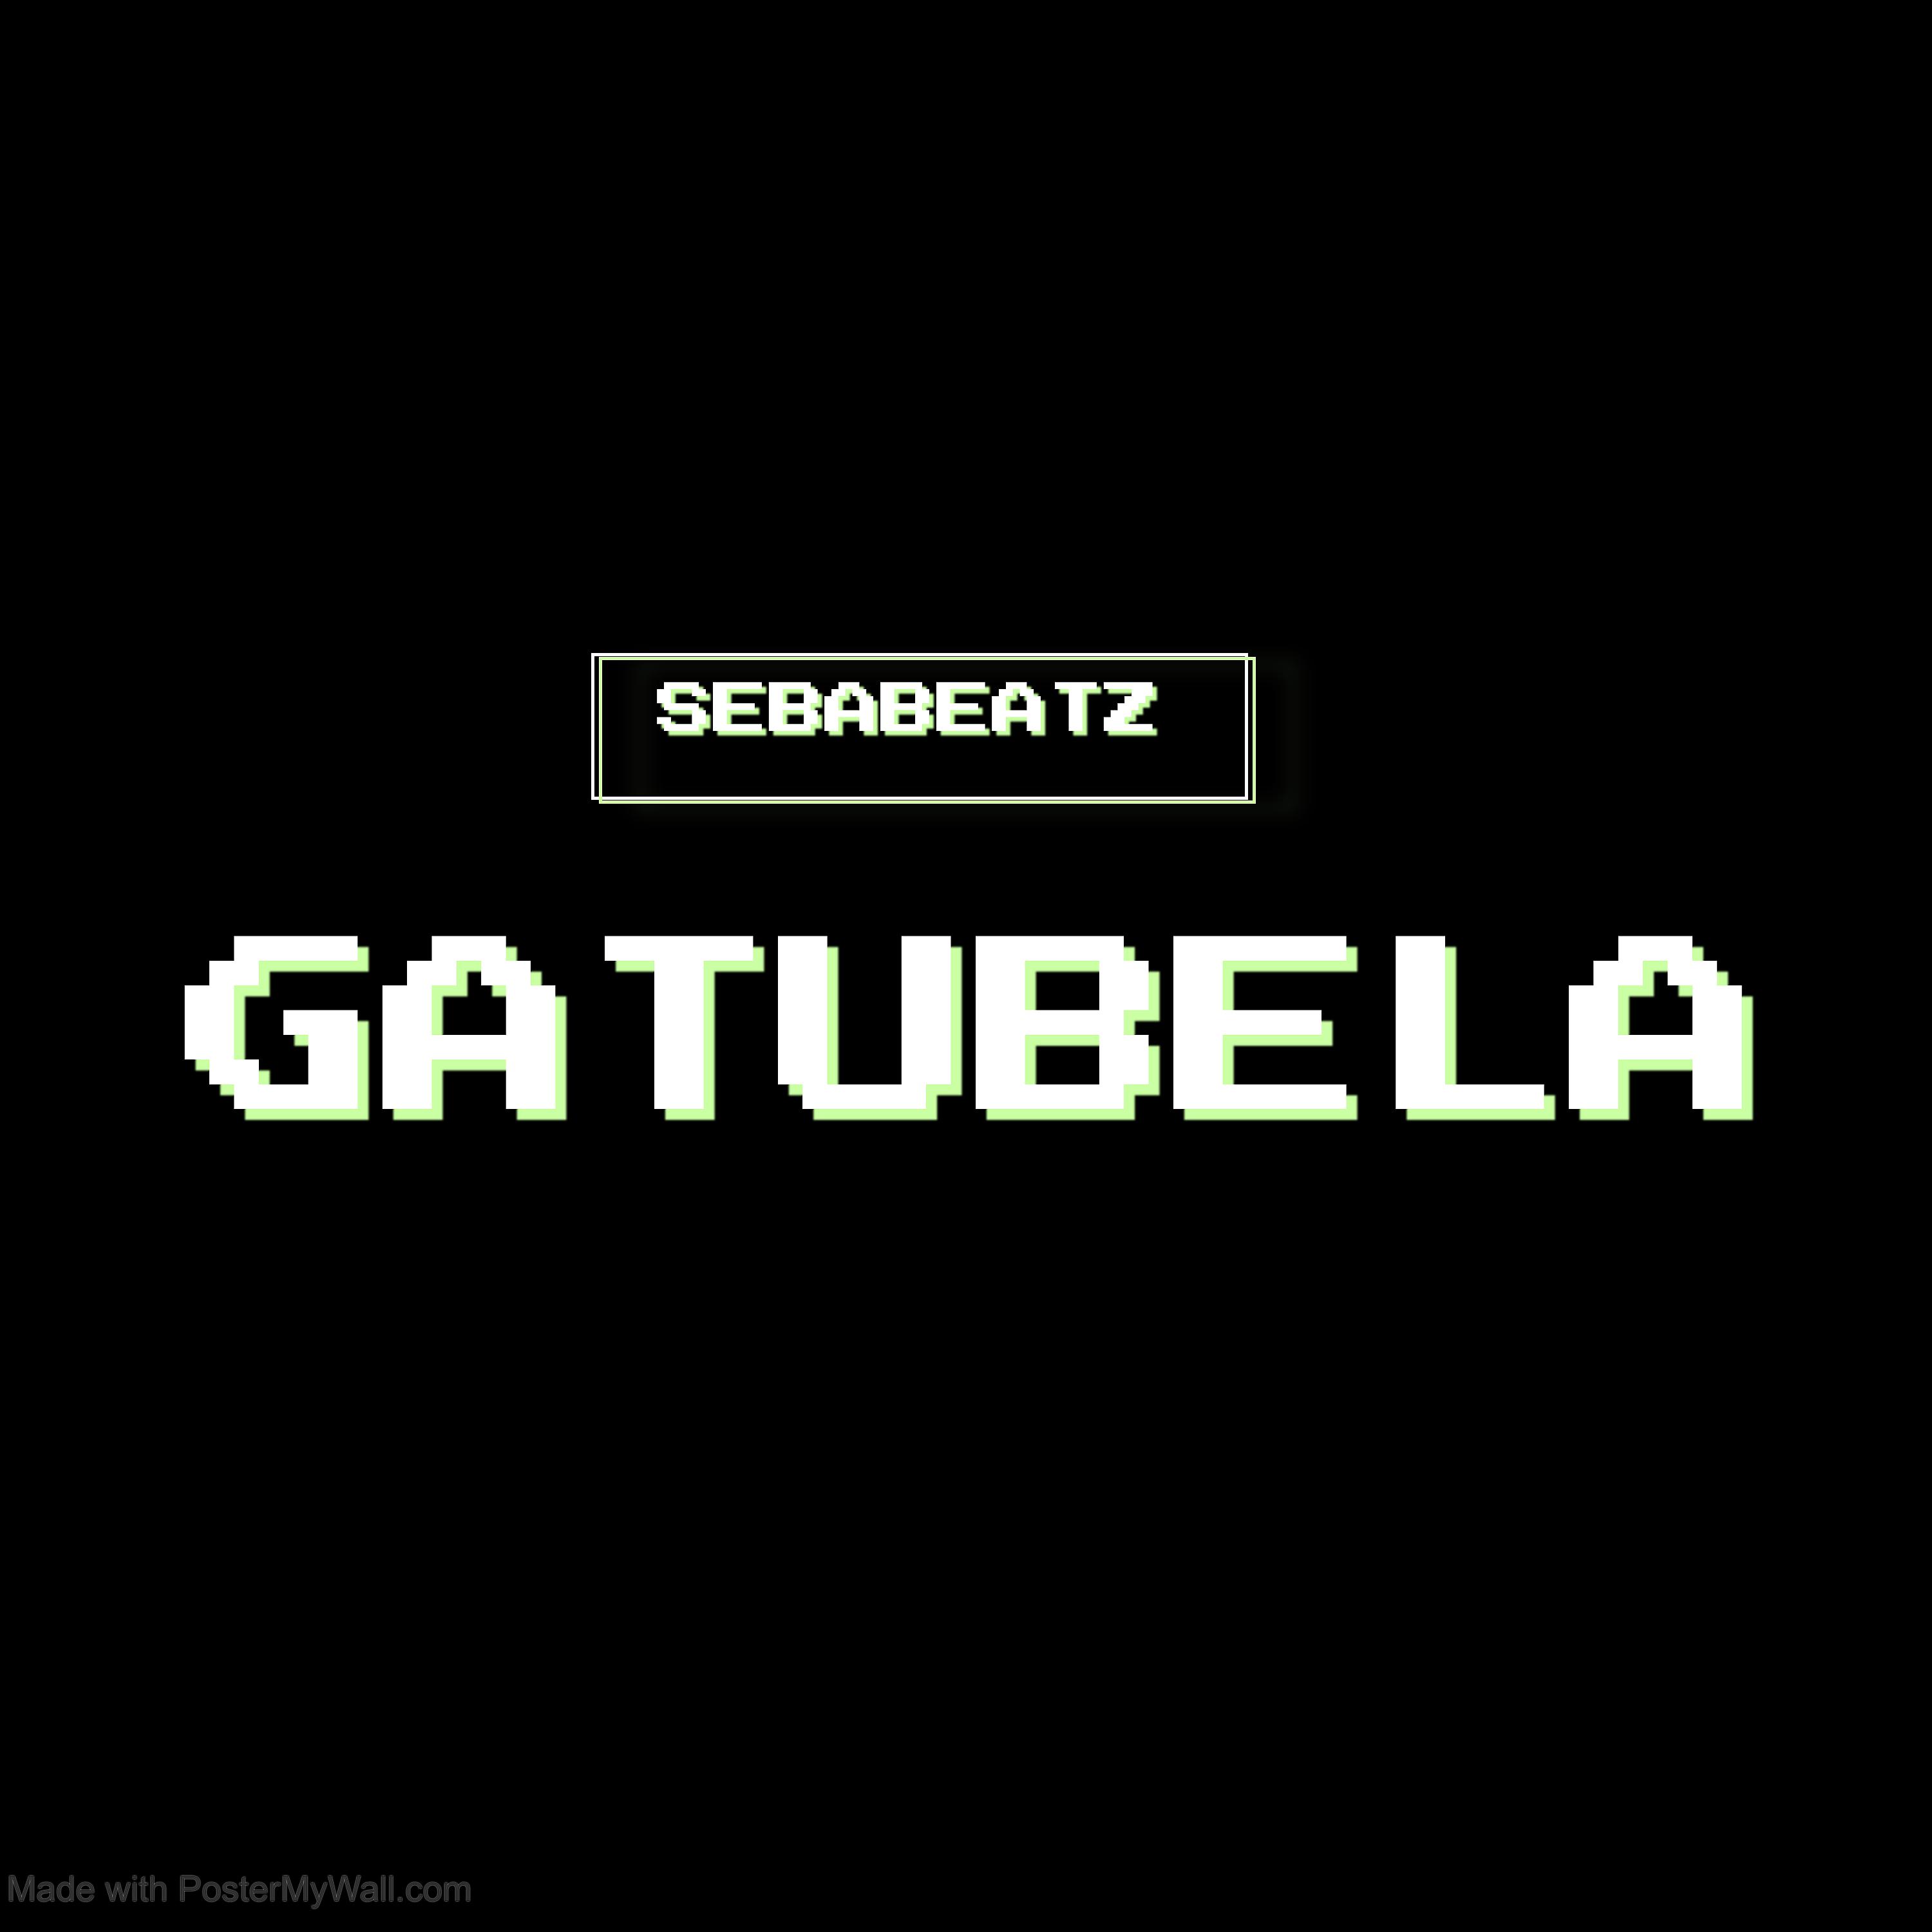 Постер альбома Gatubela